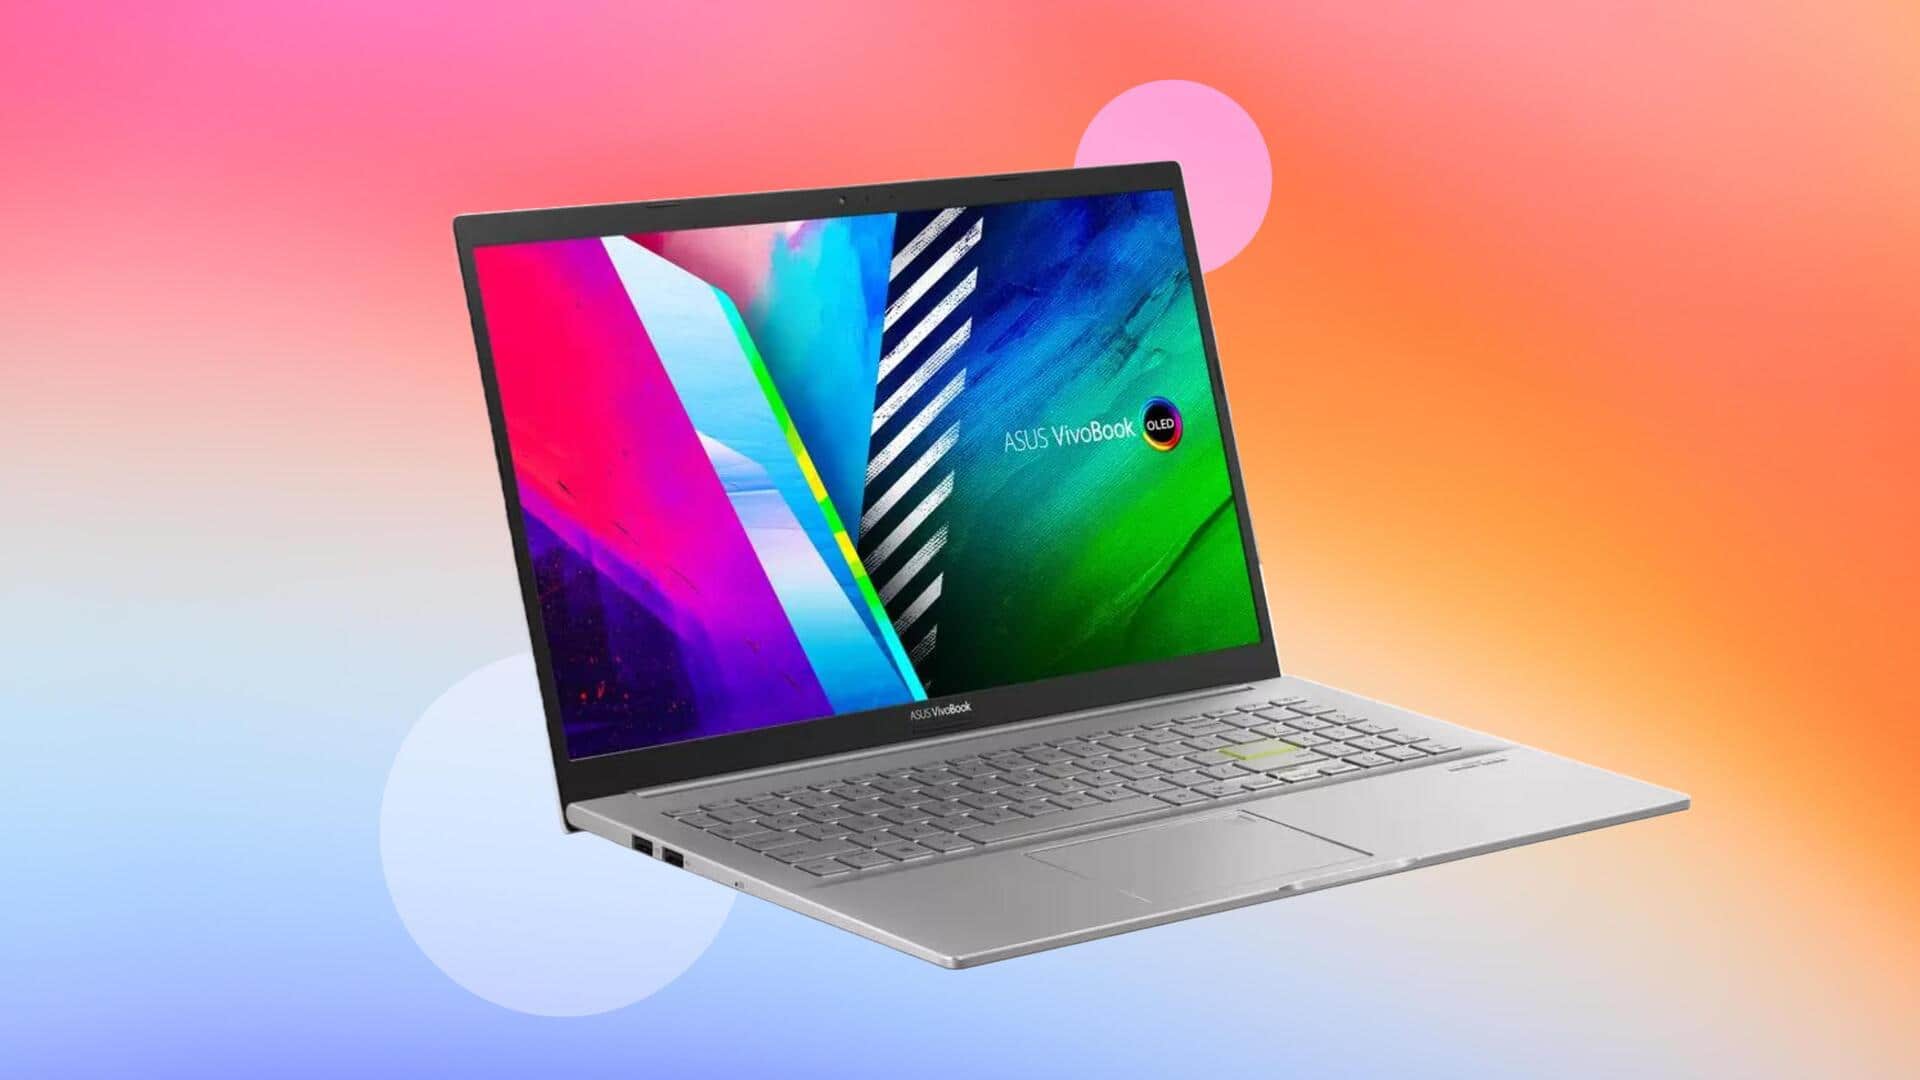 ASUS Vivobook K15 laptop gets cheaper on Flipkart: Check offers